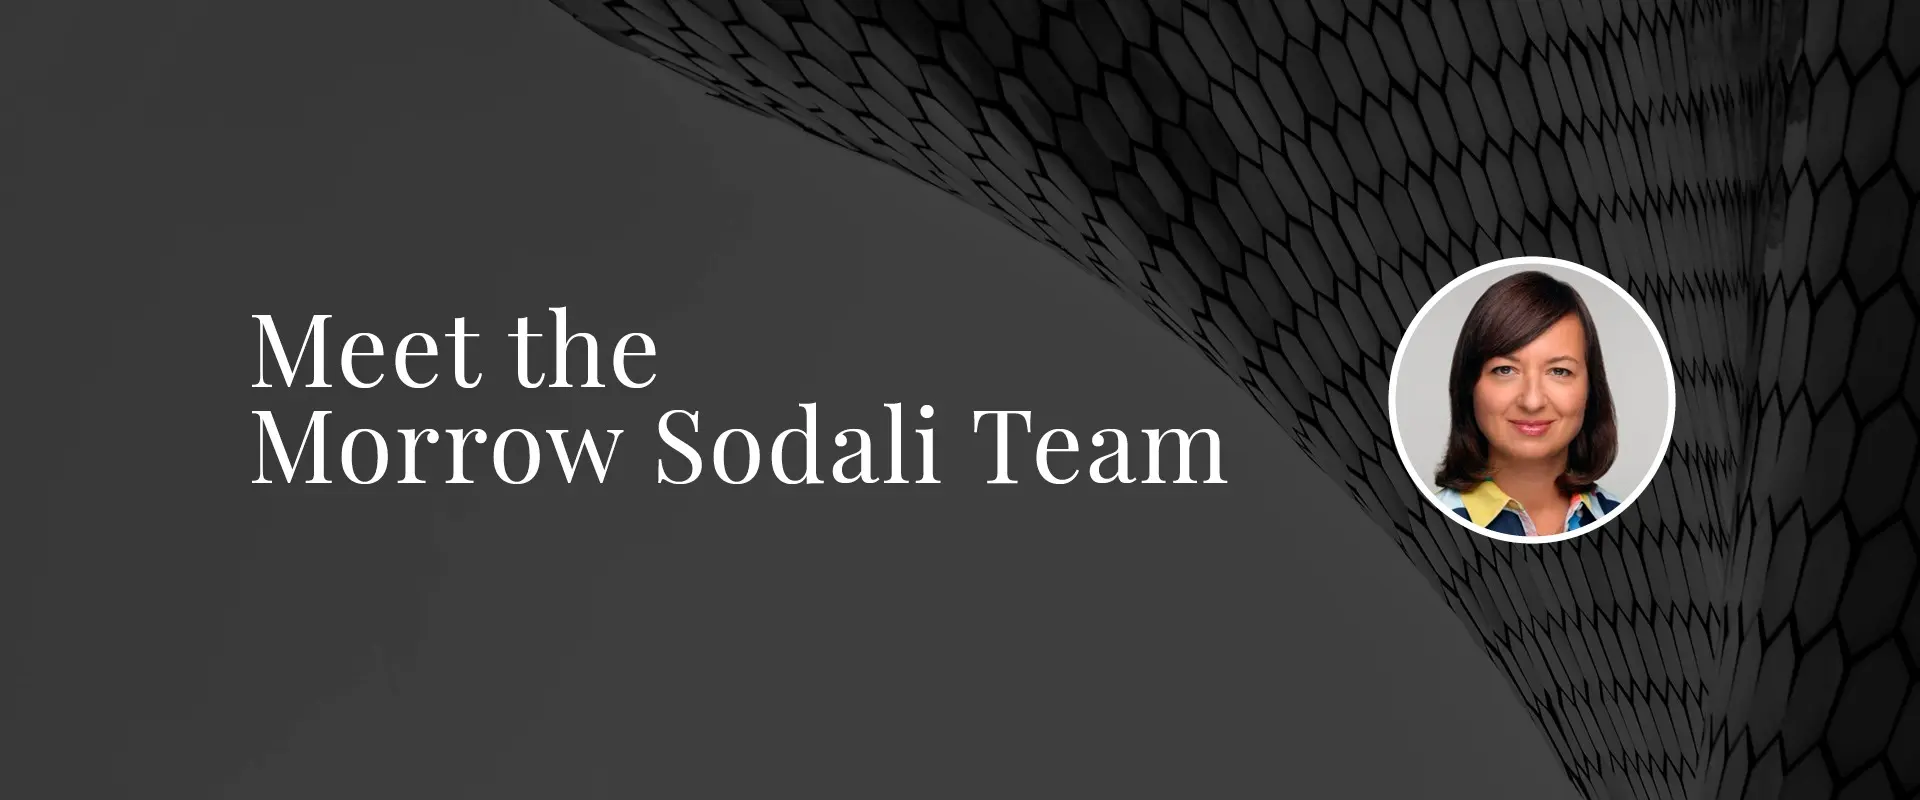 Meet the Morrow Sodali Team: Spotlight on Investor Relations